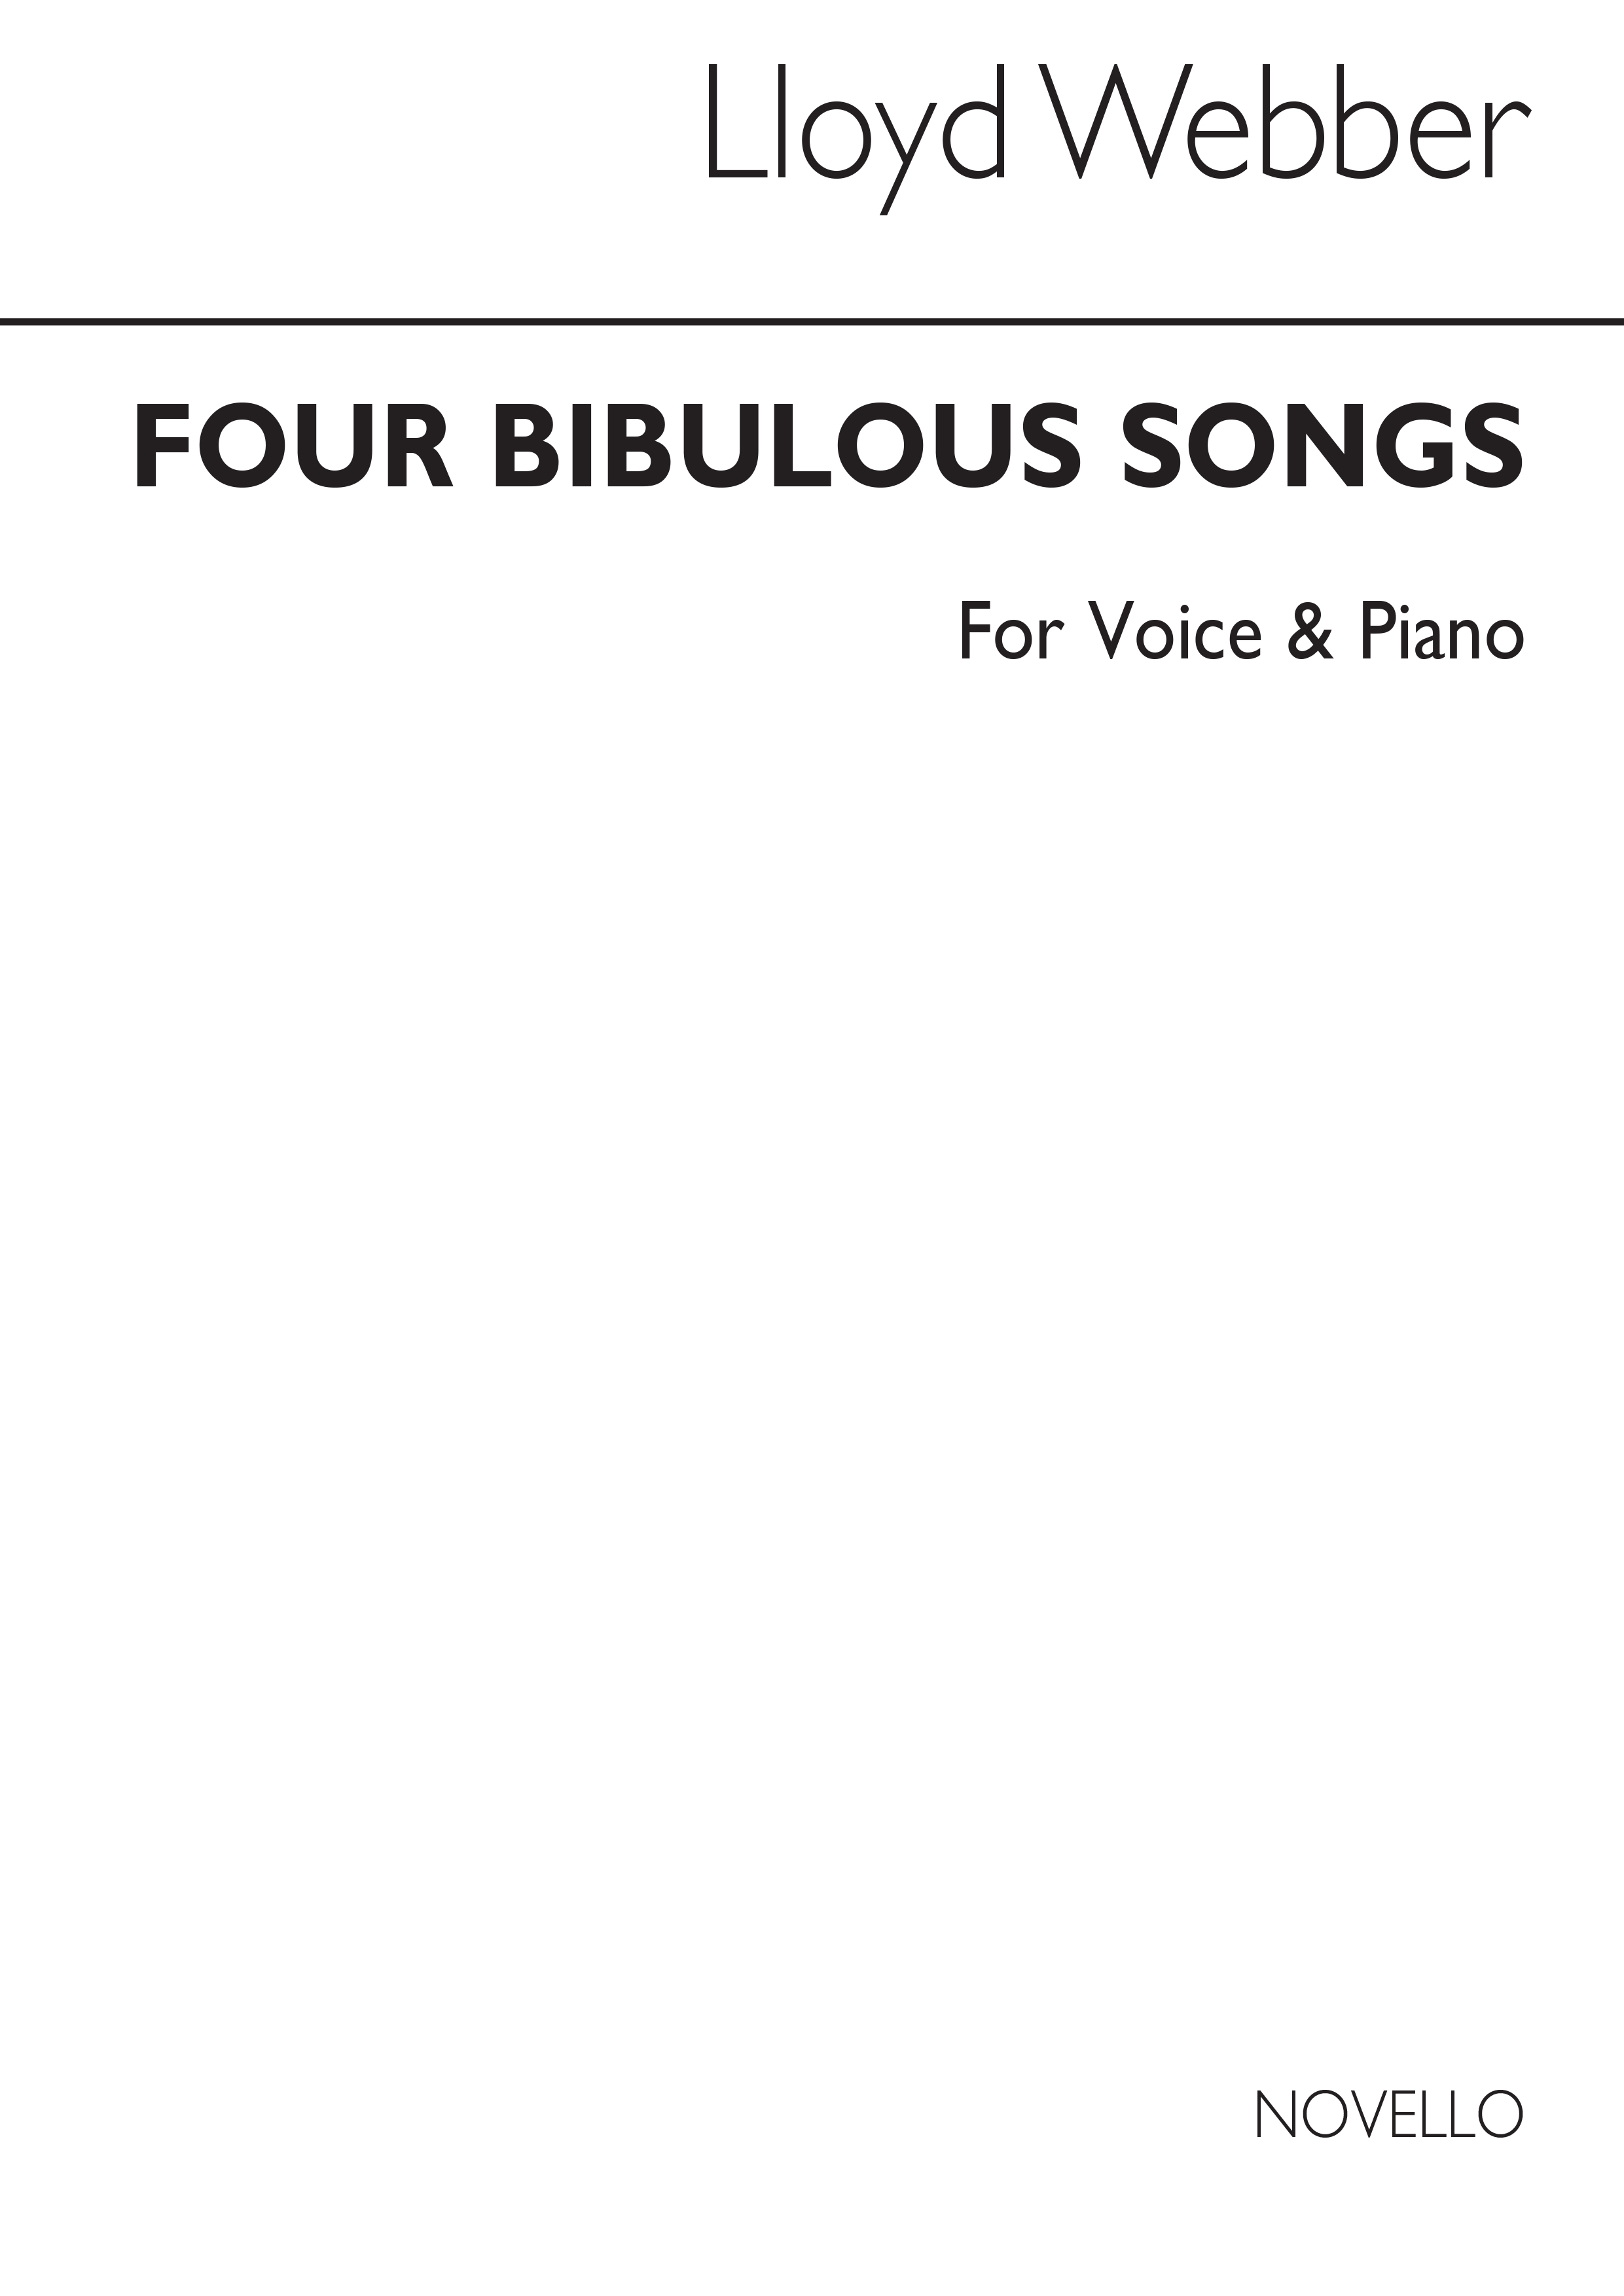 W.S Lloyd Webber: Four Bibulous Songs